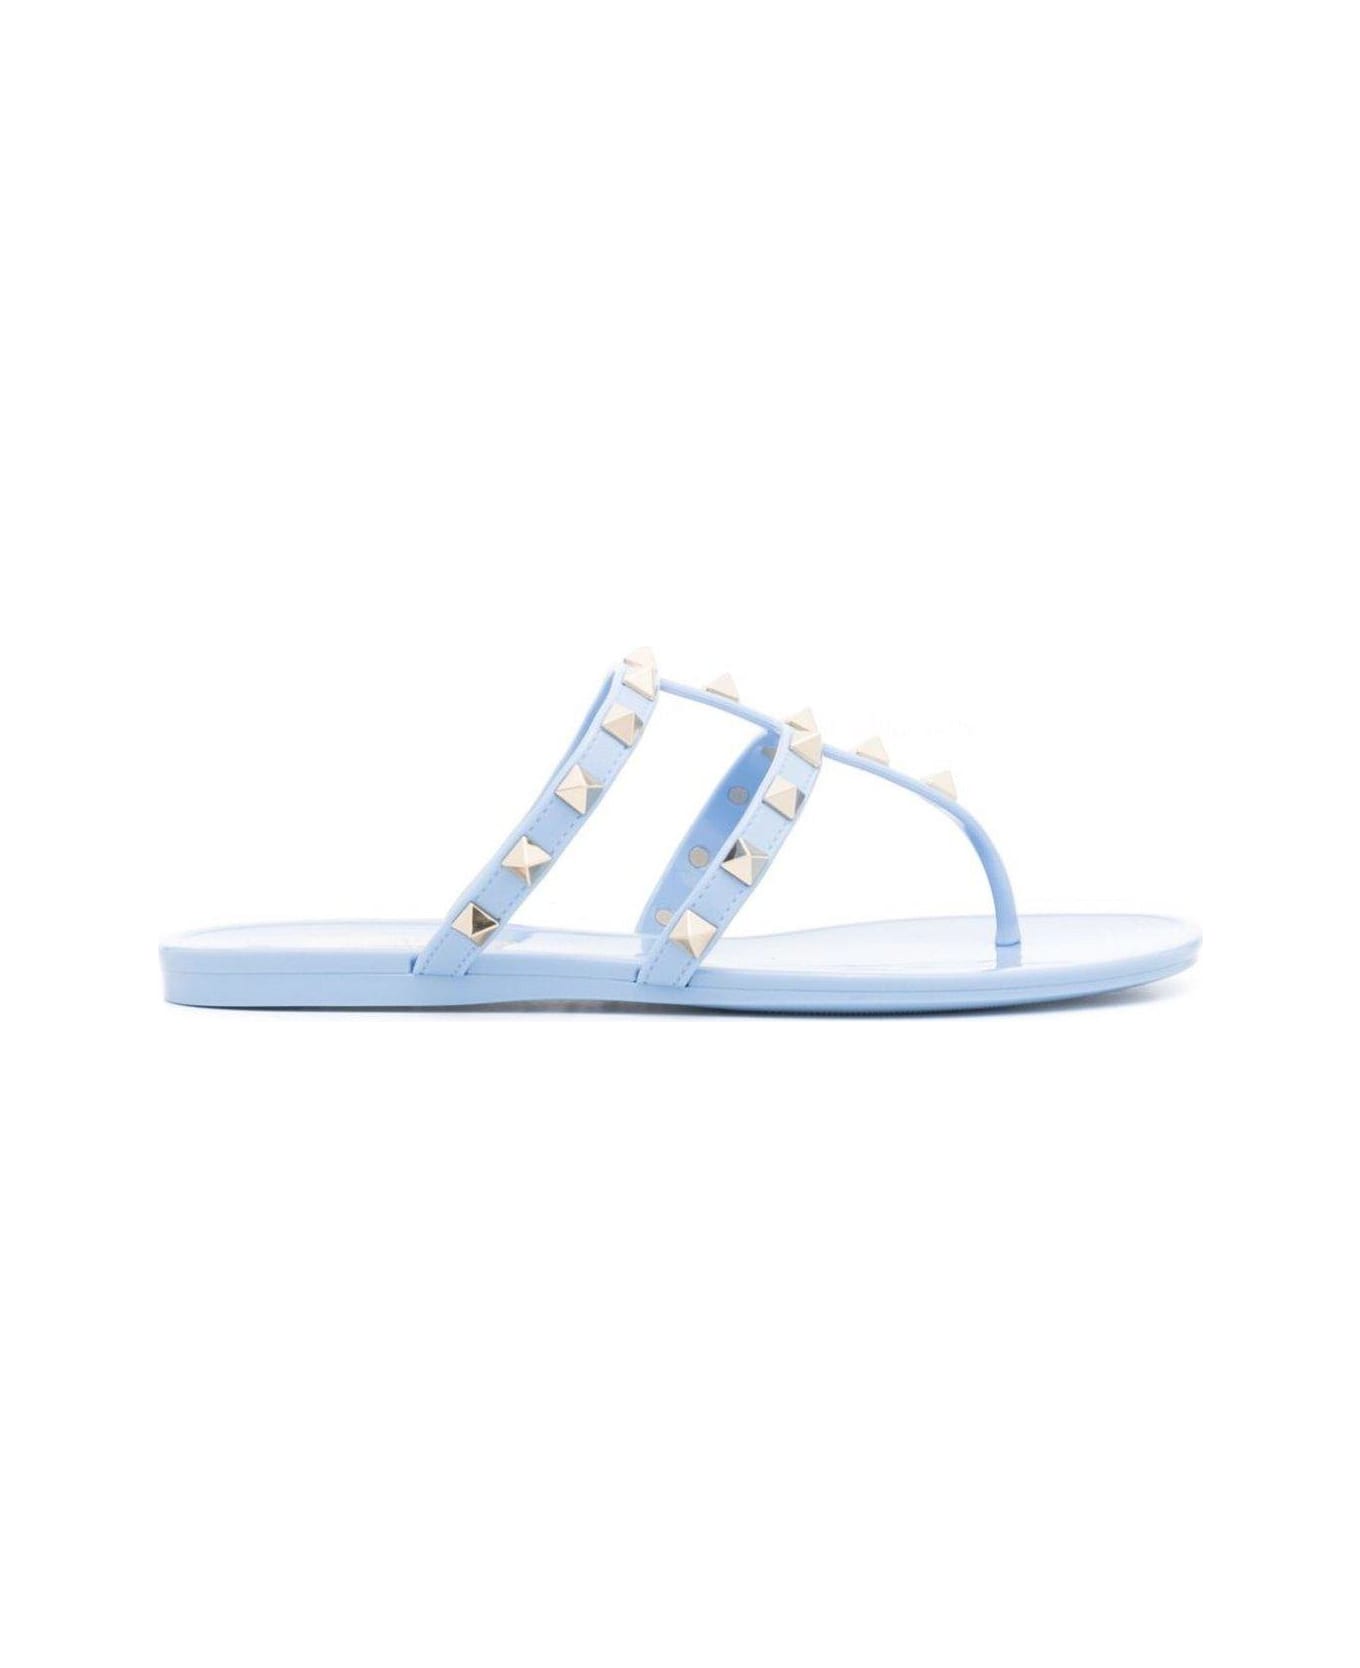 Valentino Garavani Garavani Rockstud Open Toe Flat Sandals - Clear Blue